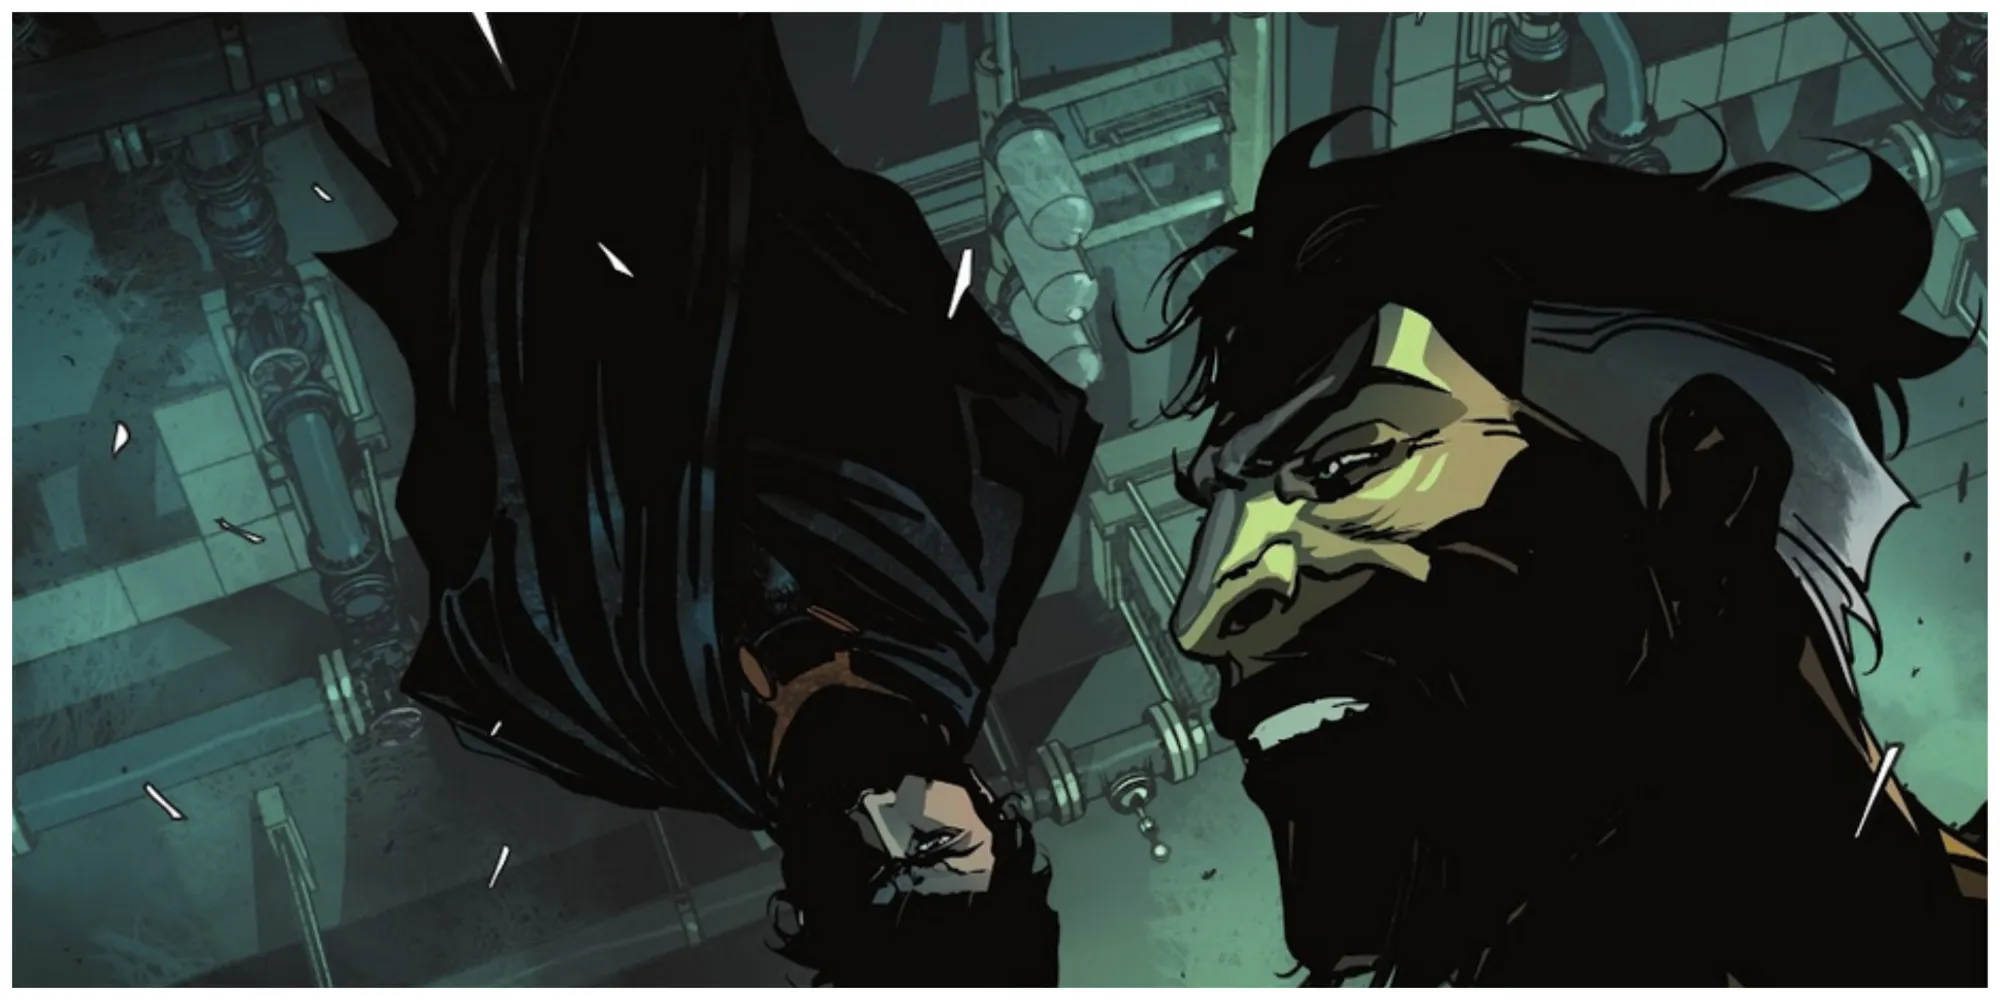 Bruce Wayne hanging upside down behind Ra’s Al Ghul